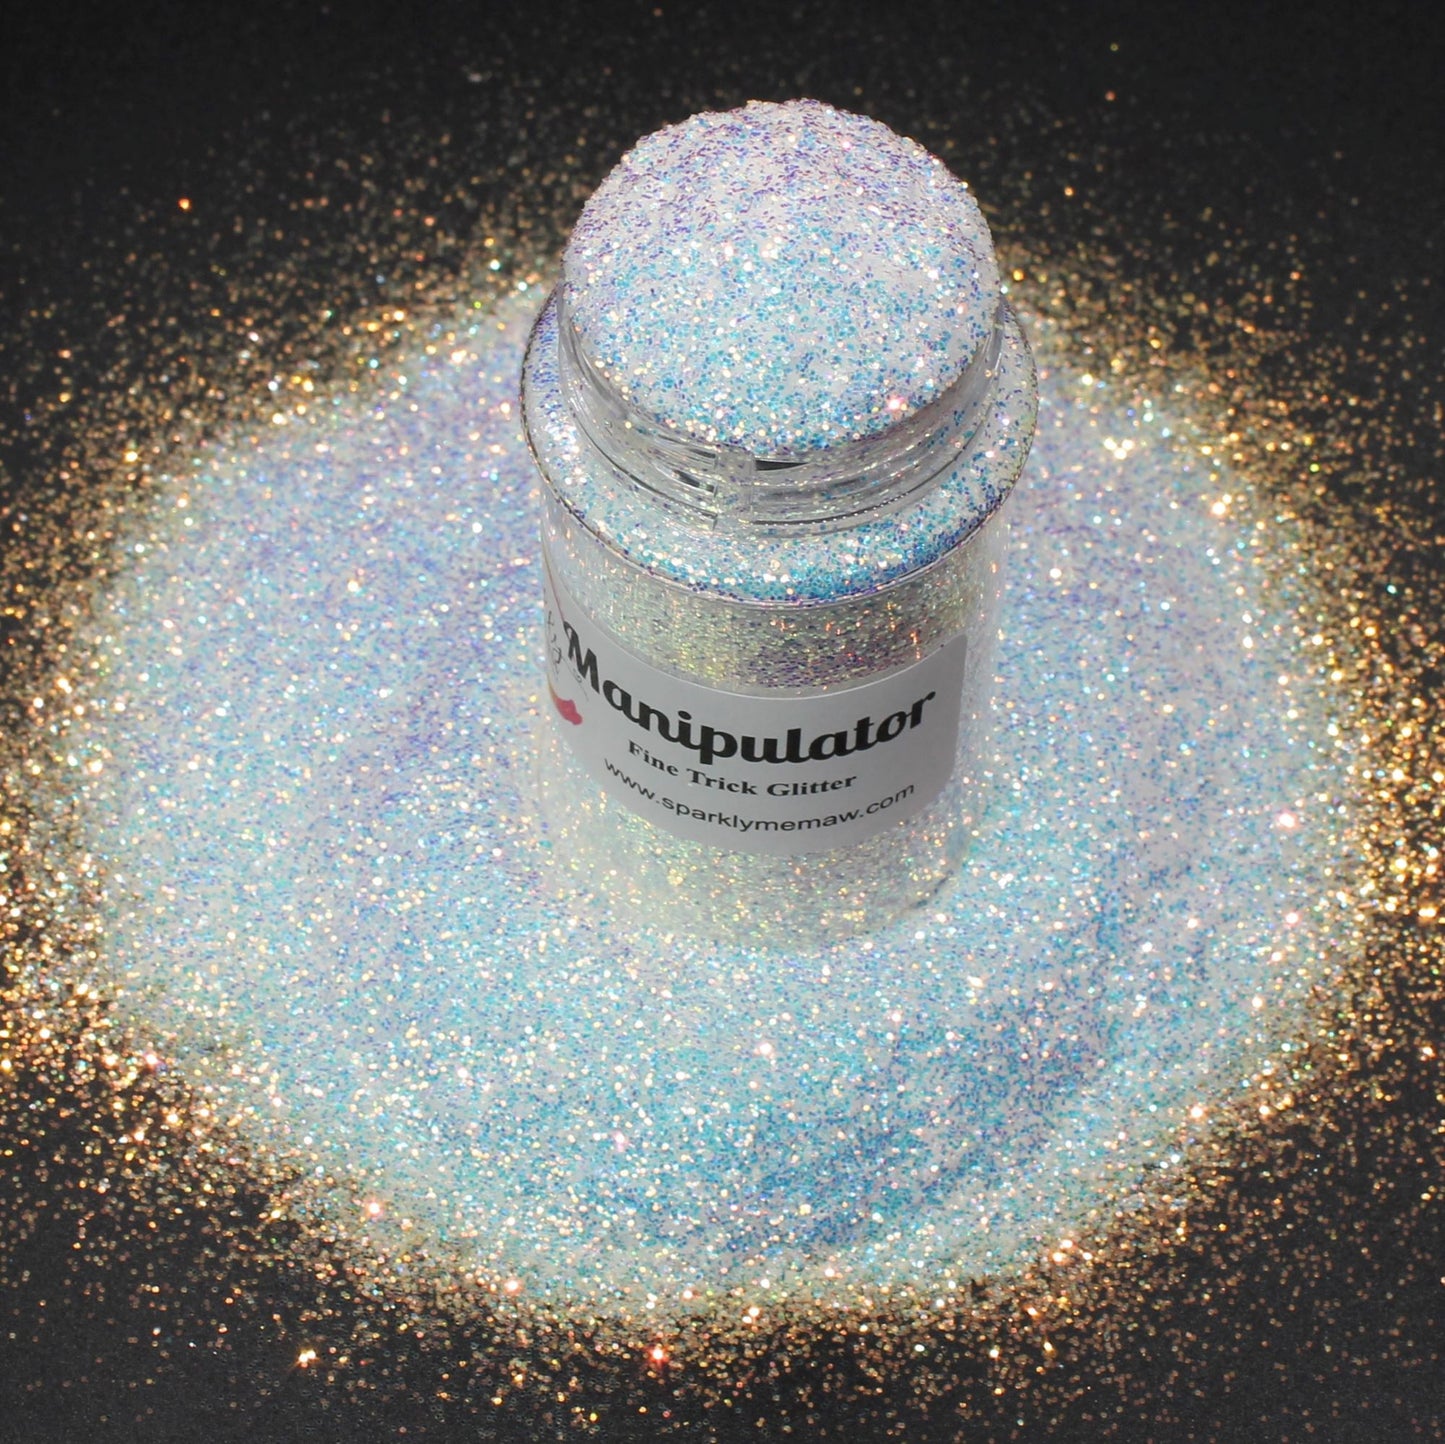 Manipulator Fine Opal Trick Glitter